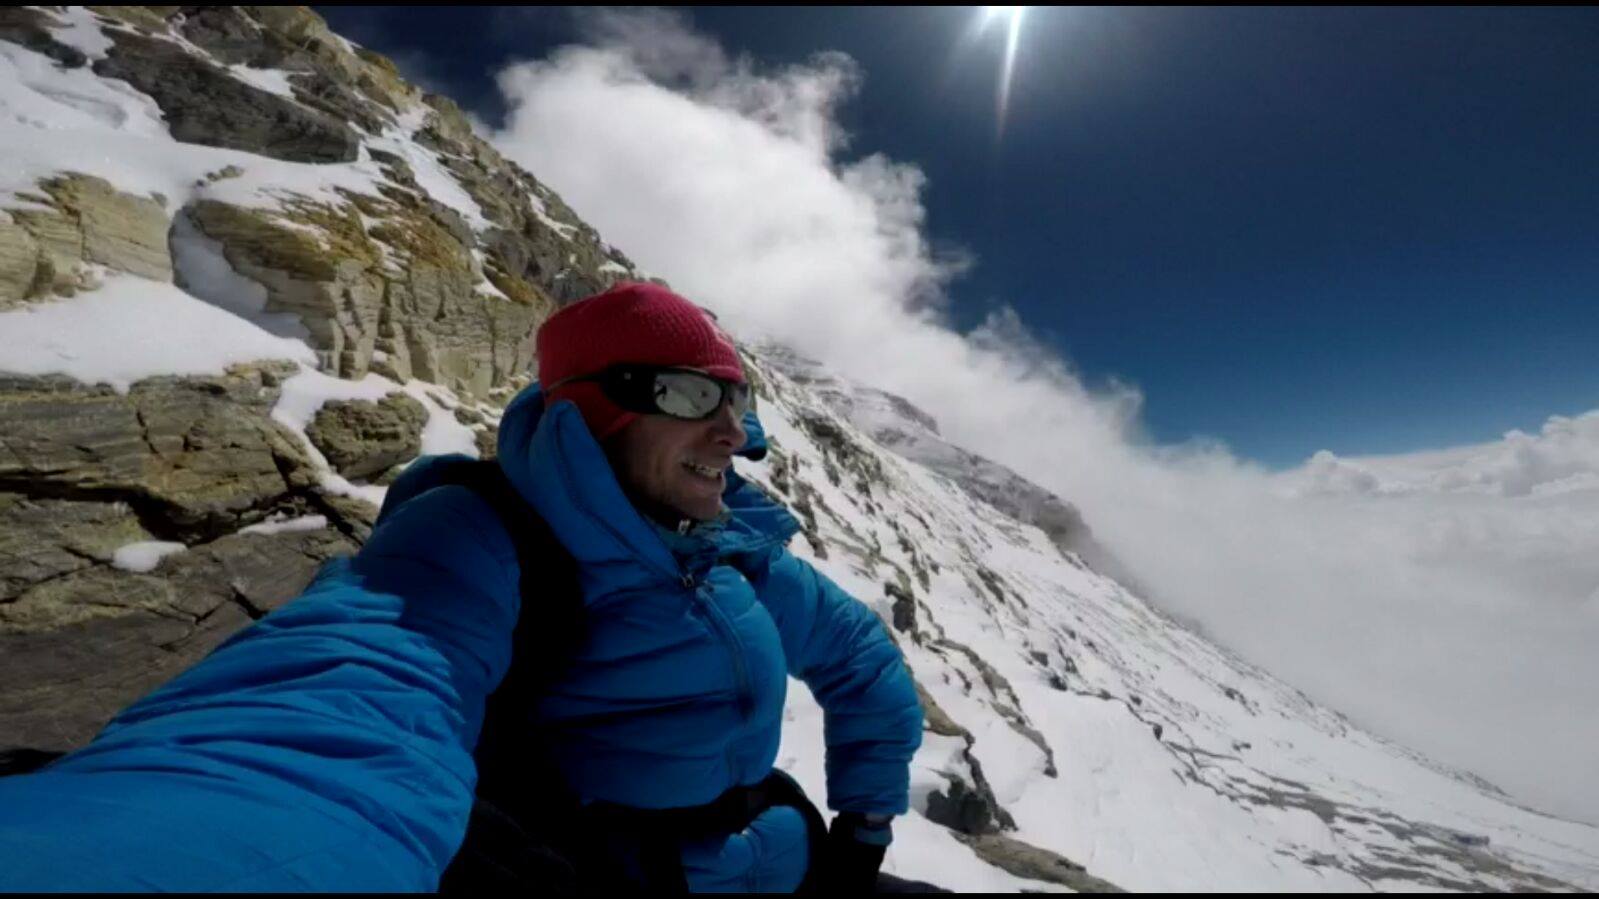 Kilian Jornet réalise une 2e ascension de l'Everest (8848m) sans oxygène en moins d'une semaine